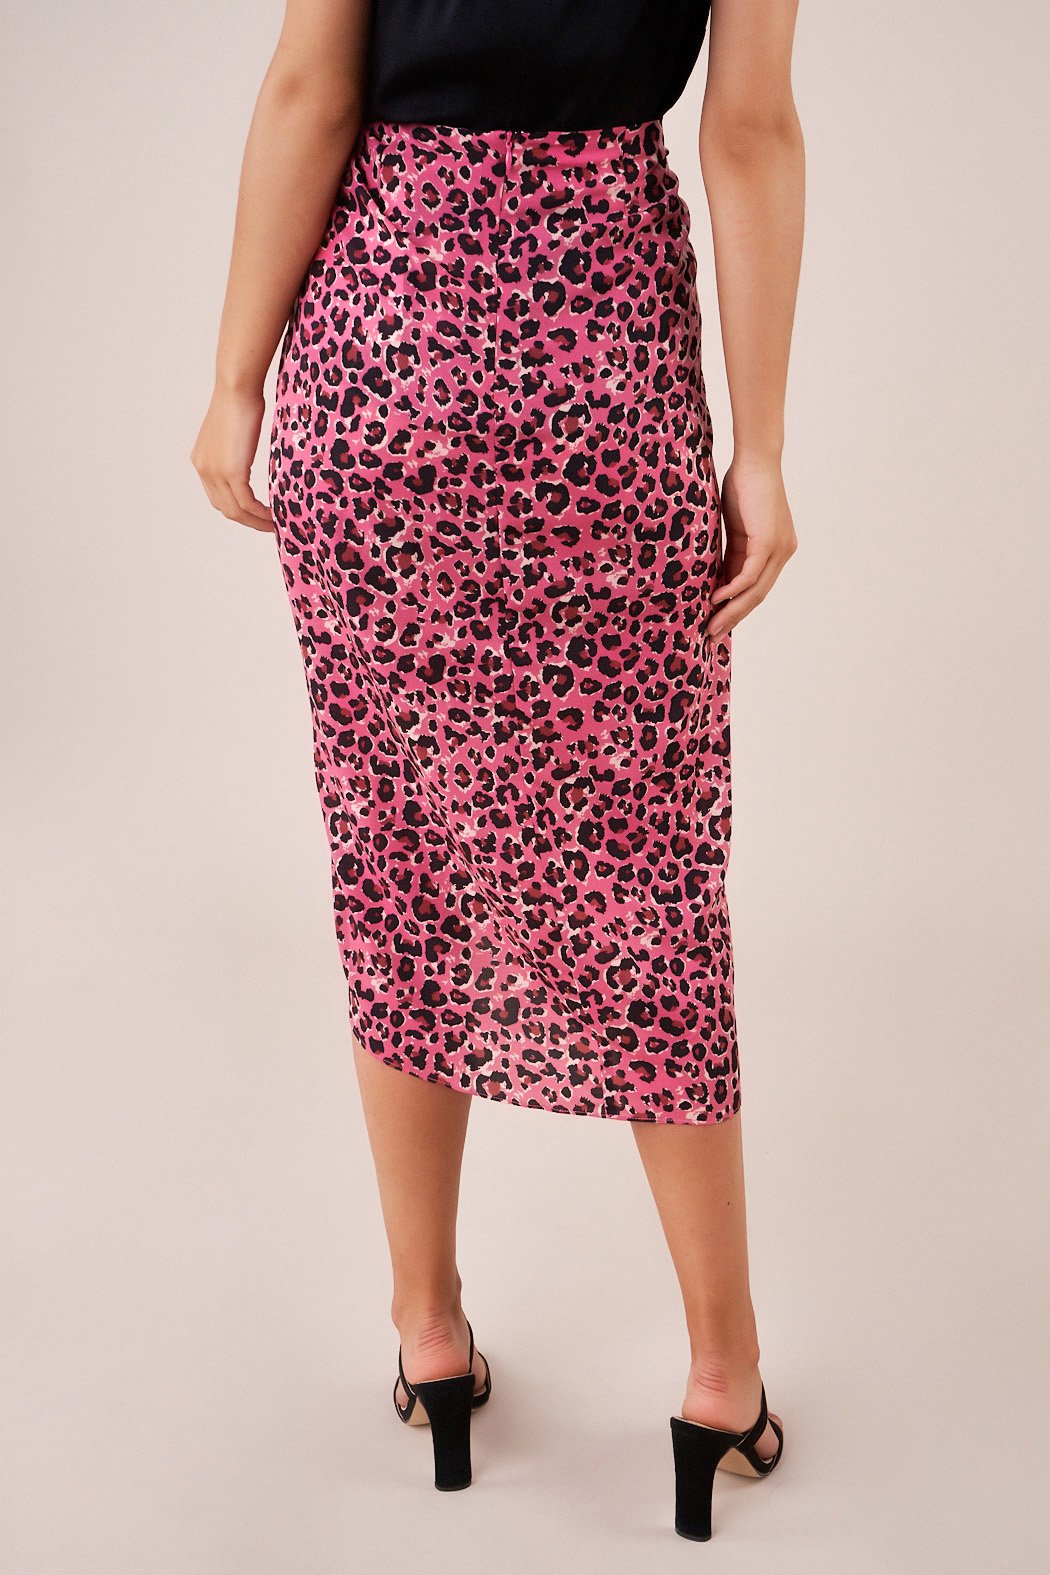 leopard midi skirt pink